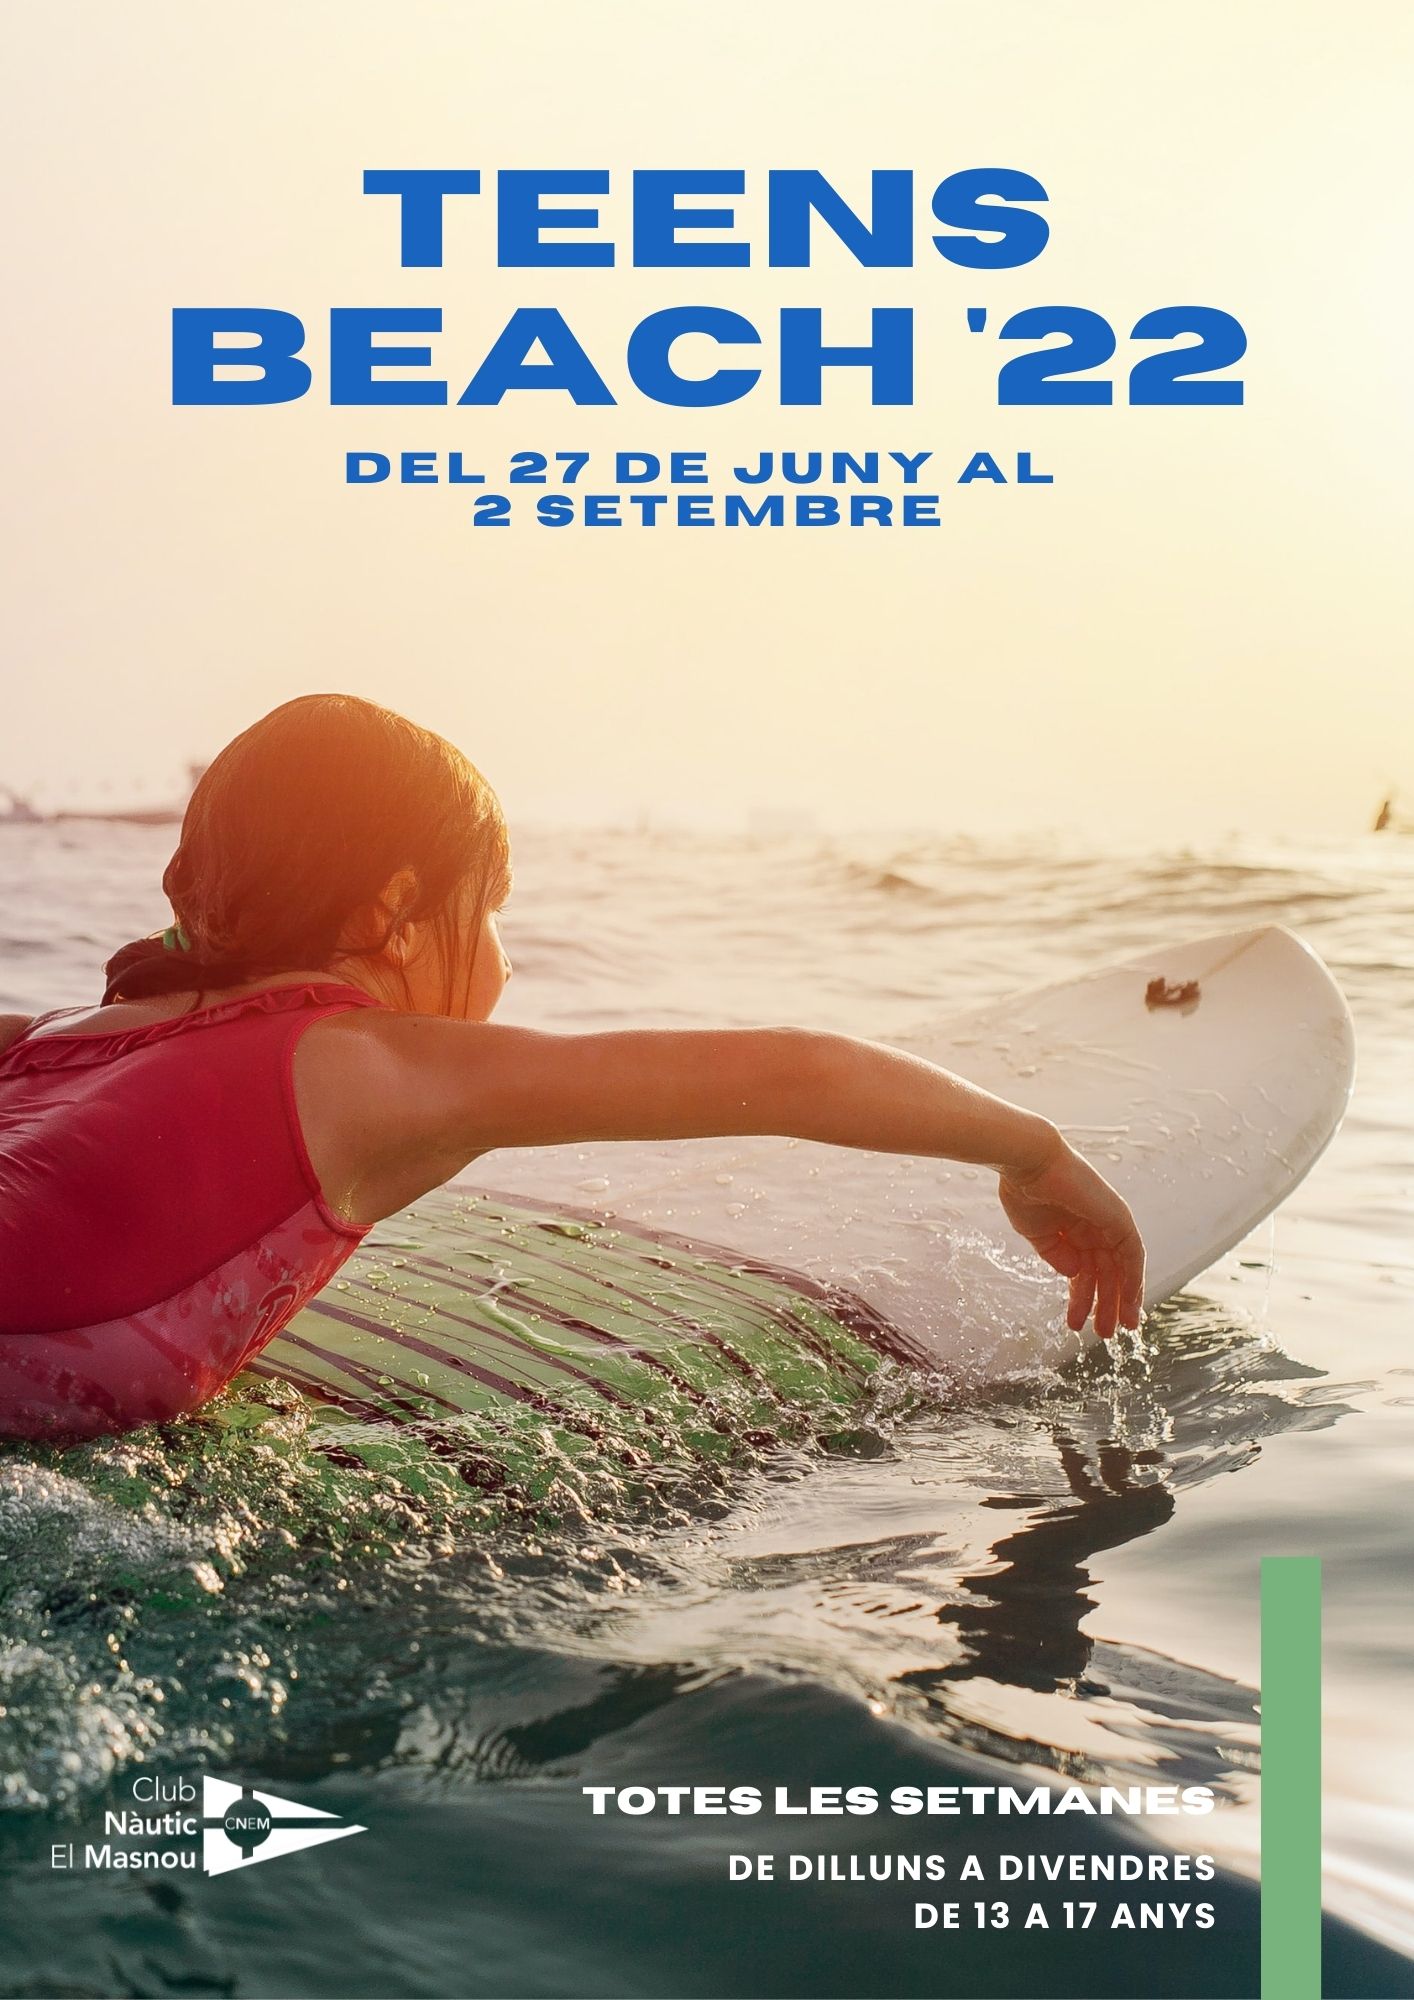 Teens Beach 2022